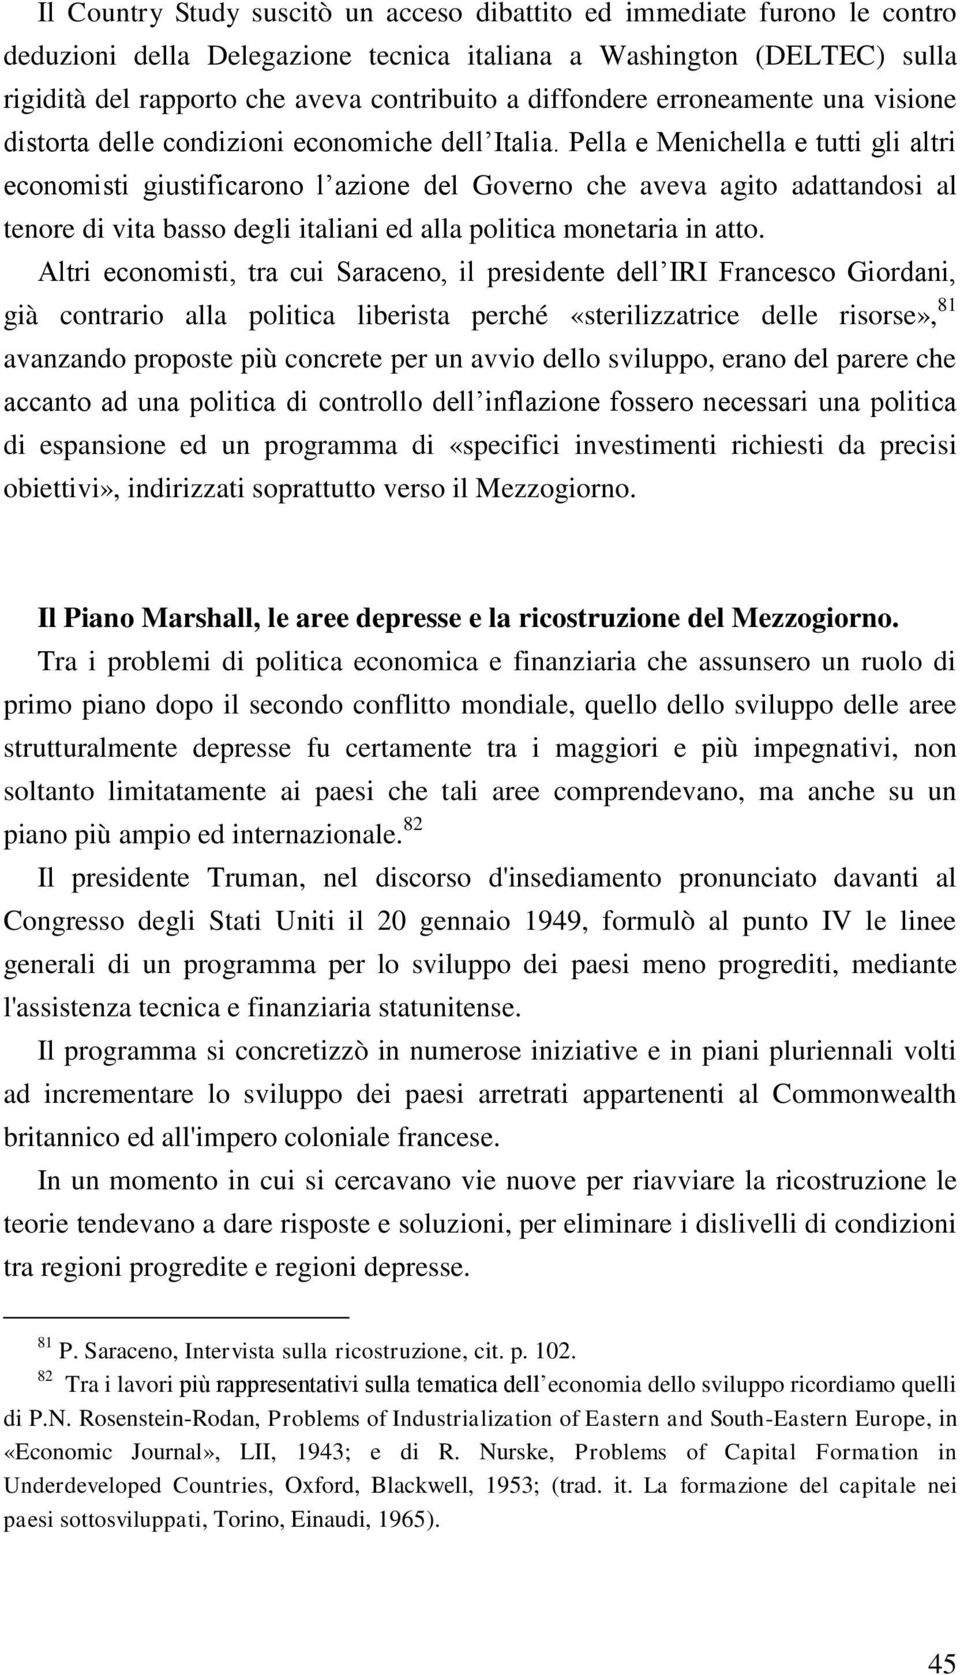 Pella e Menichella e tutti gli altri economisti giustificarono l azione del Governo che aveva agito adattandosi al tenore di vita basso degli italiani ed alla politica monetaria in atto.